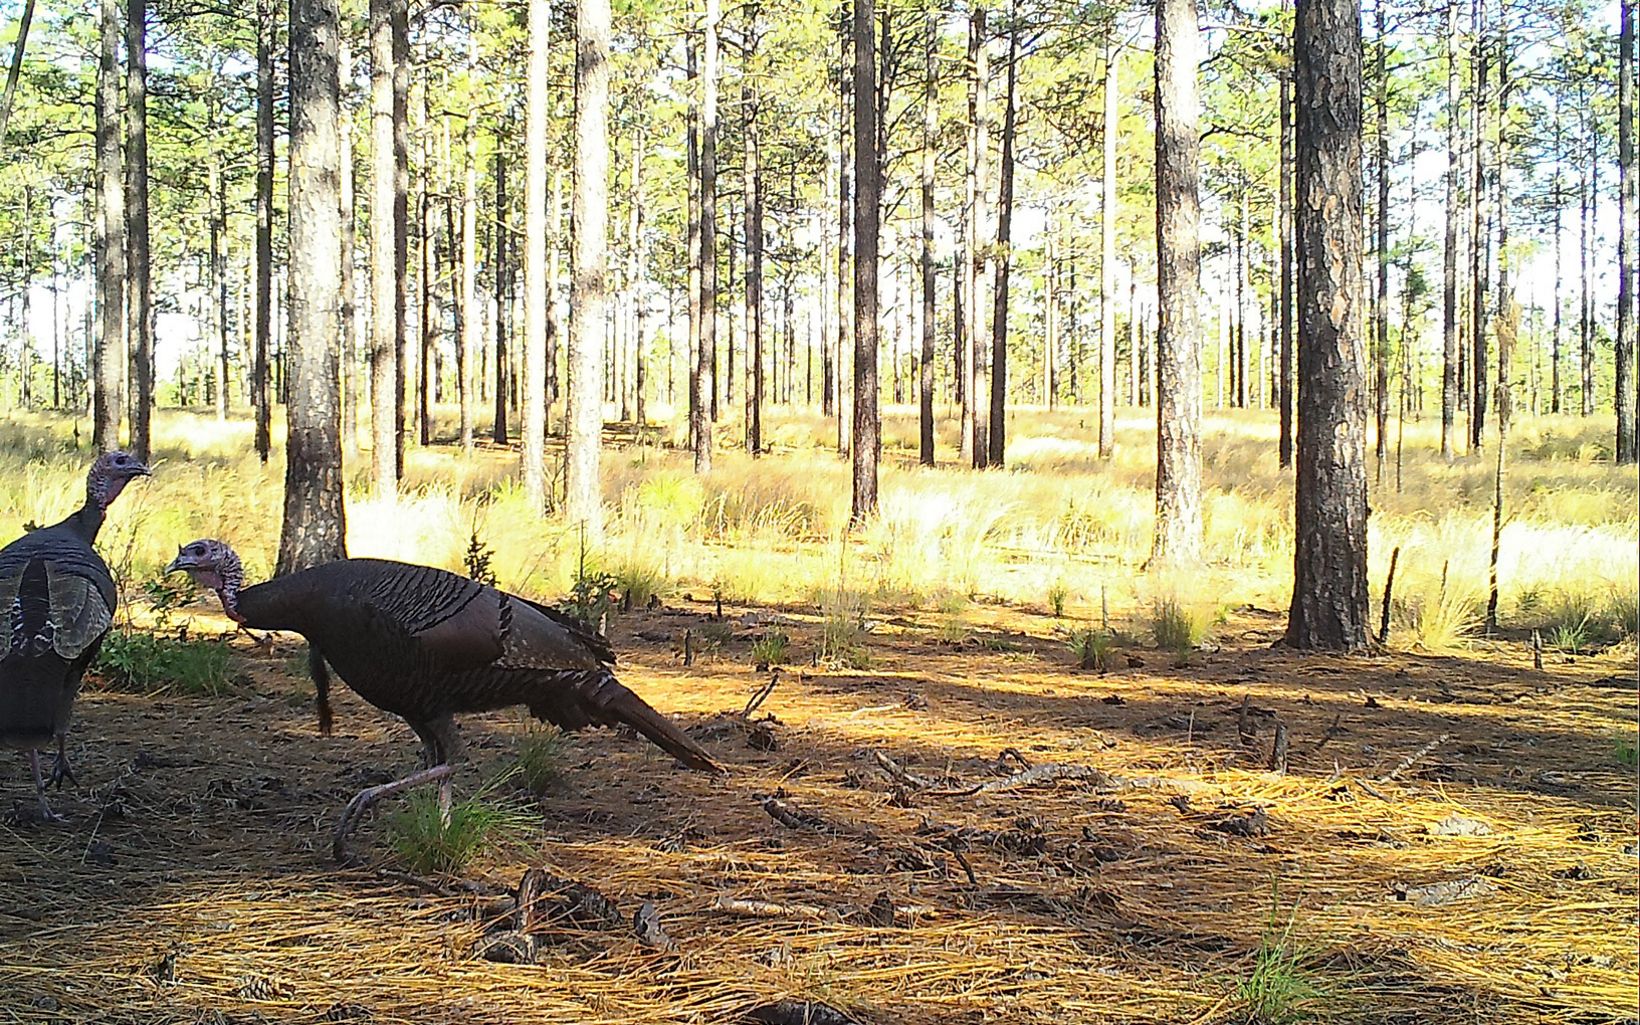 Two wild turkeys roaming in the longleaf pine habitat. 